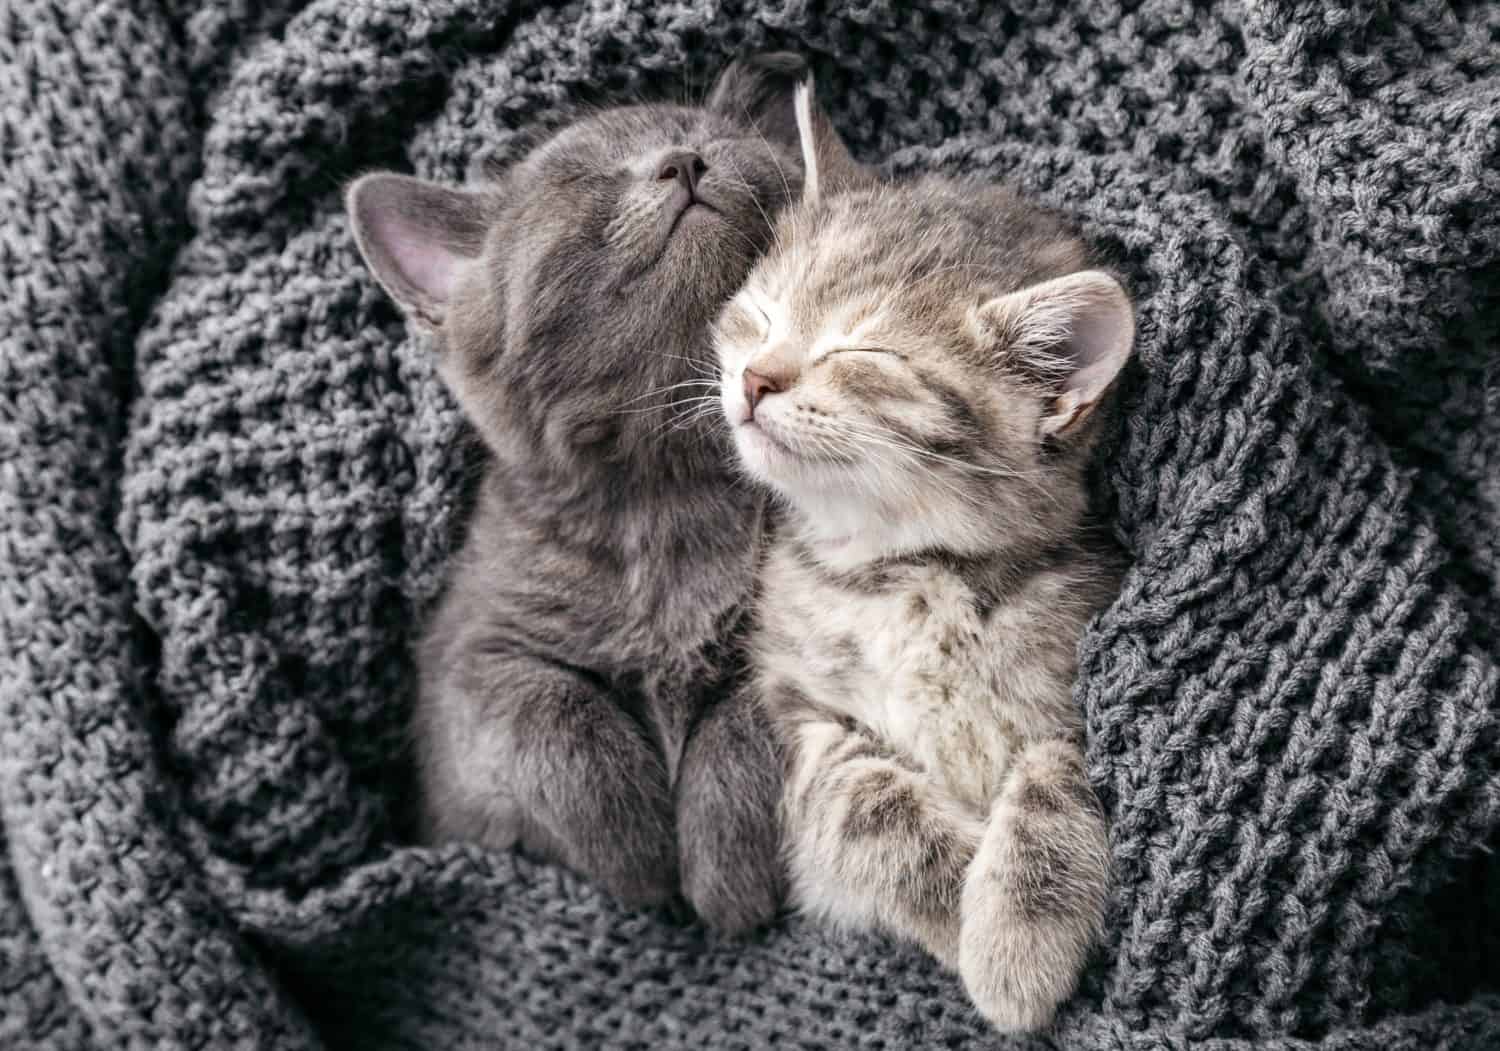 Una coppia di gattini che si abbracciano in relazioni di amicizia amorose e fanno un pisolino fanno sogni d'oro nella culla.  I gattini si strofinano delicatamente sulla coperta lavorata a maglia.  I gatti amano